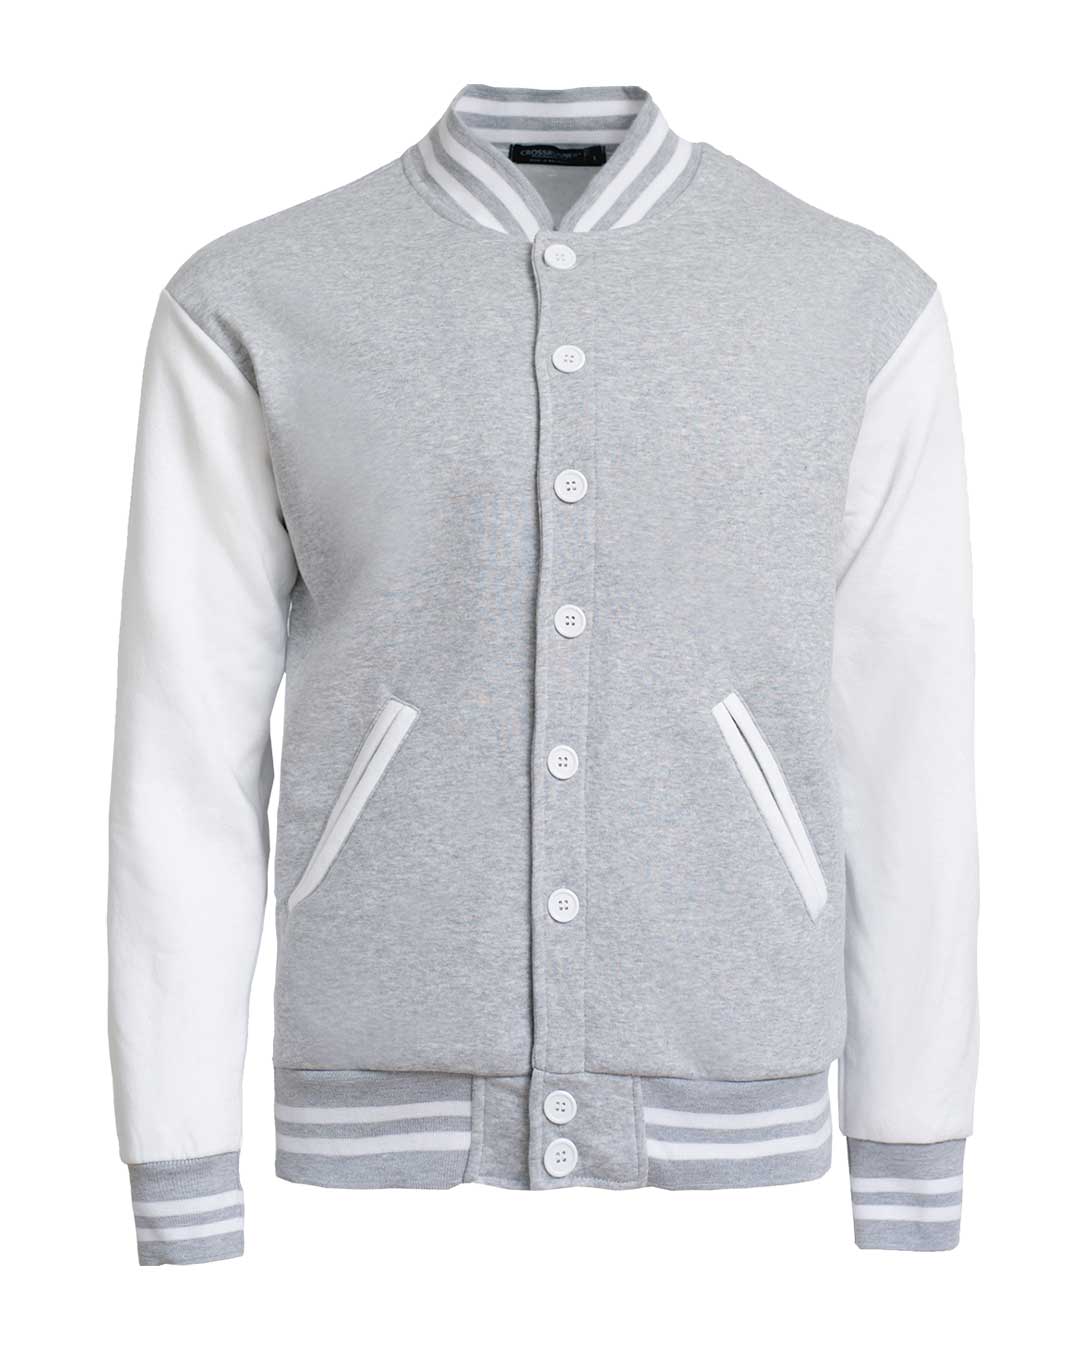 Varsity Jacket Grey White